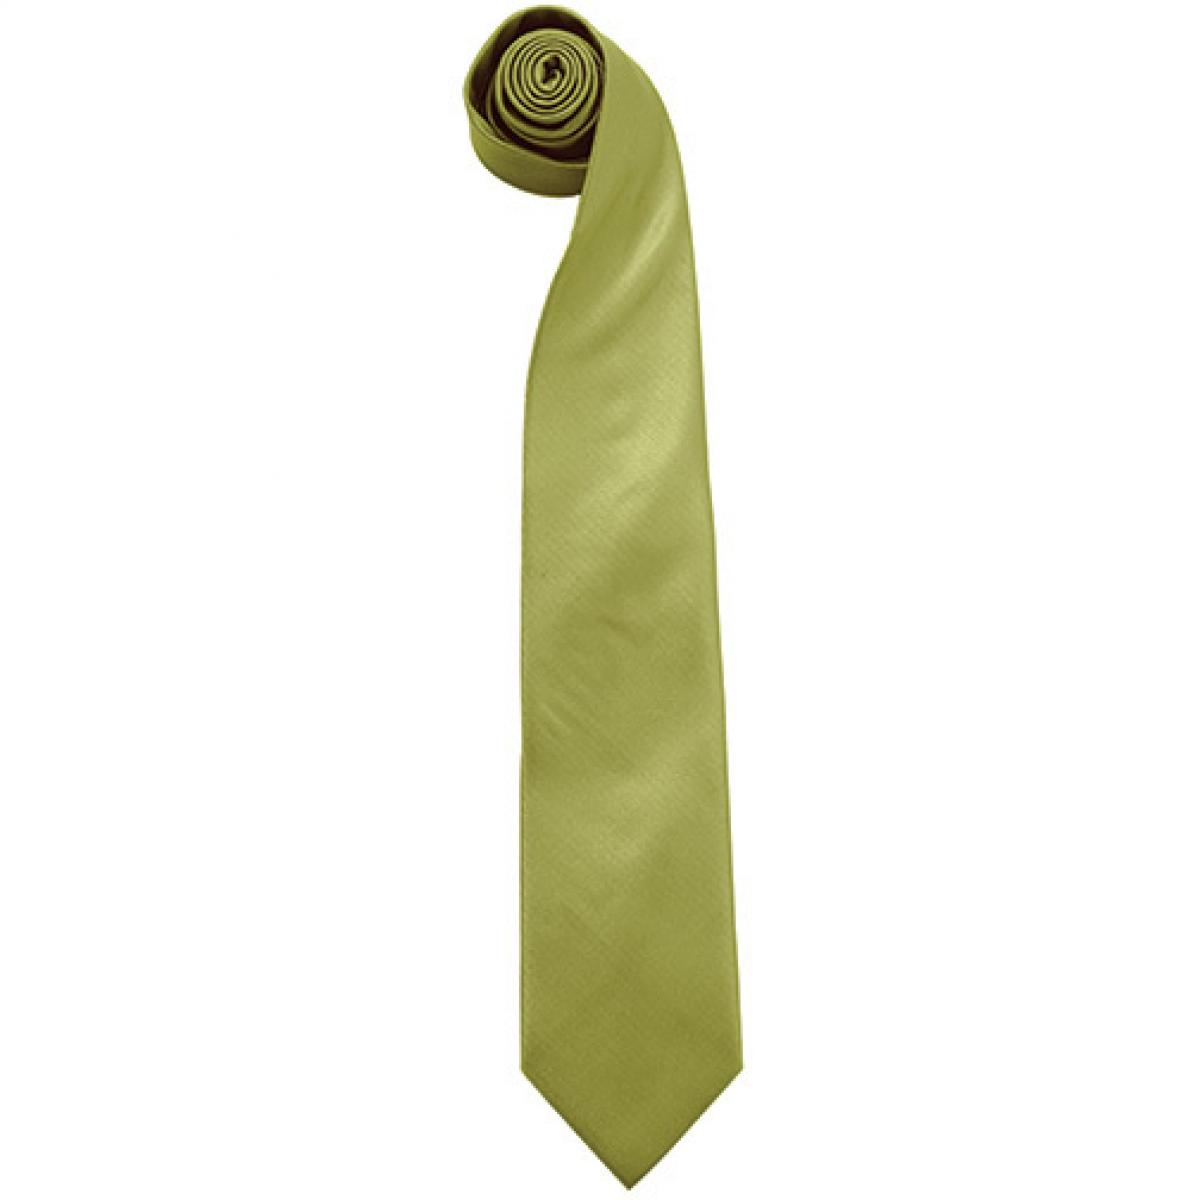 Hersteller: Premier Workwear Herstellernummer: PR765 Artikelbezeichnung: Krawatte Uni-Fashion / Colours Farbe: Grass (ca. Pantone 7761C)